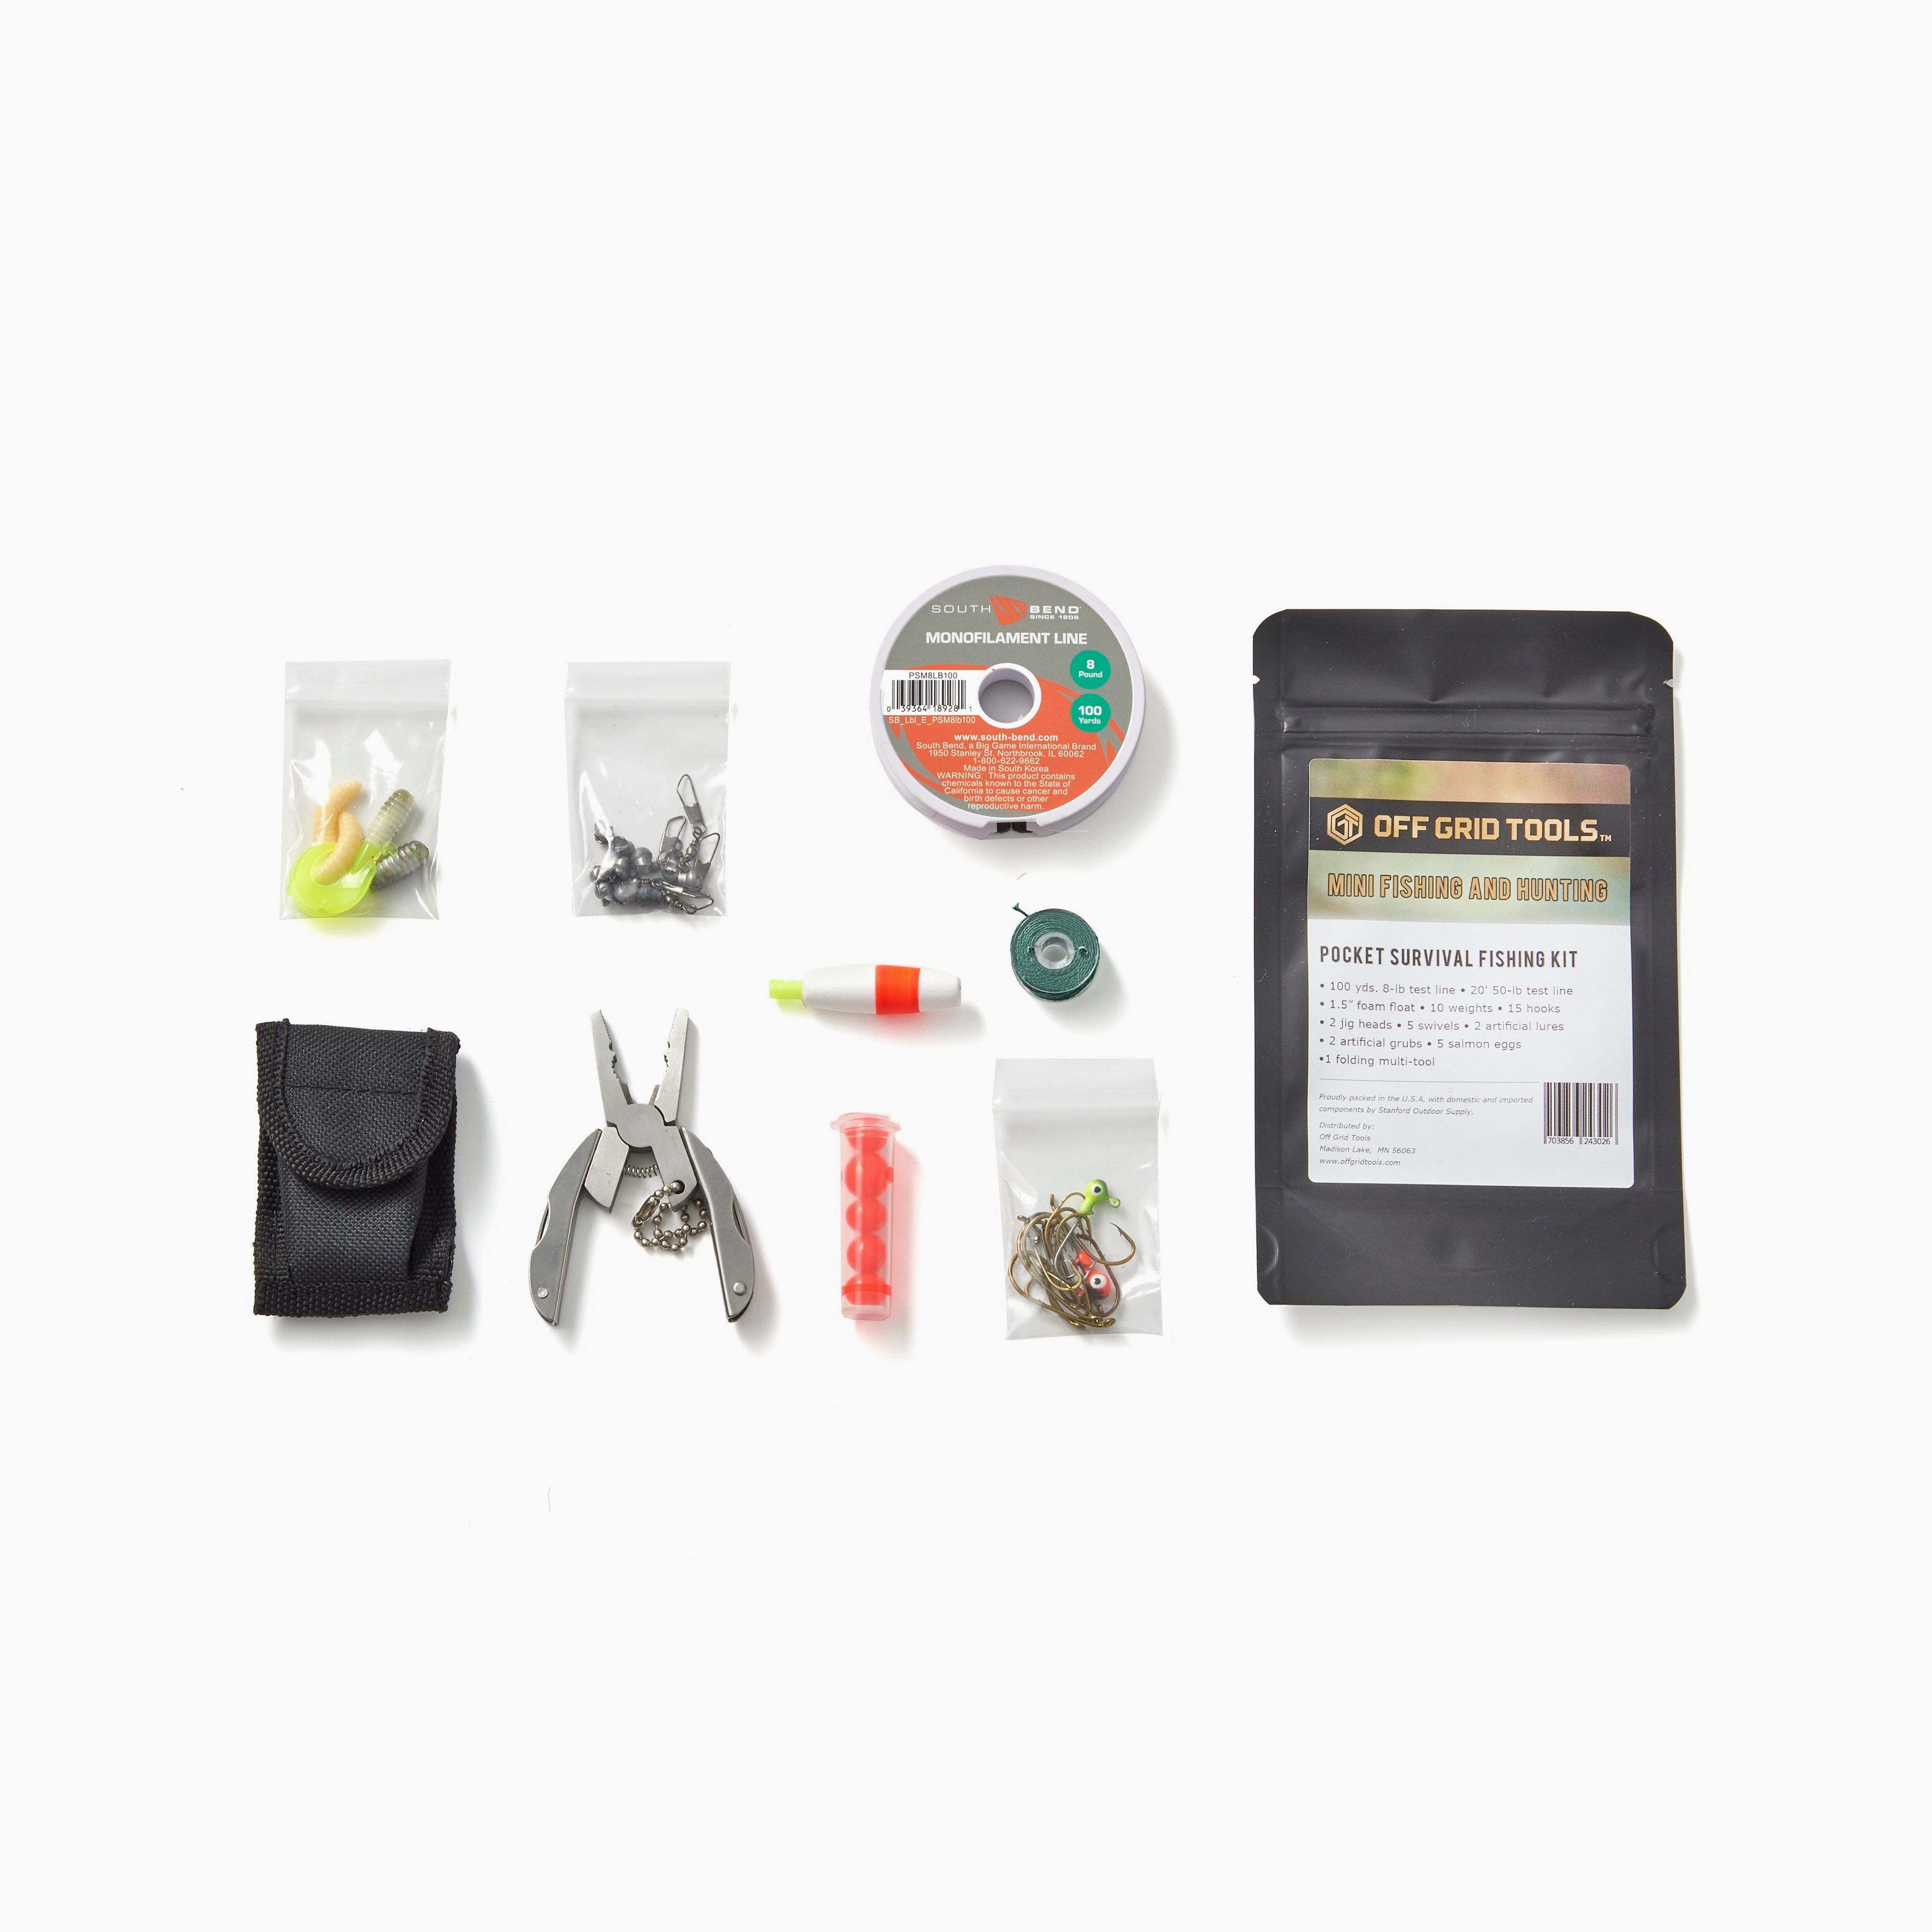 OGT Fishing & Hunting Mini - Pocket Survival Fishing Kit